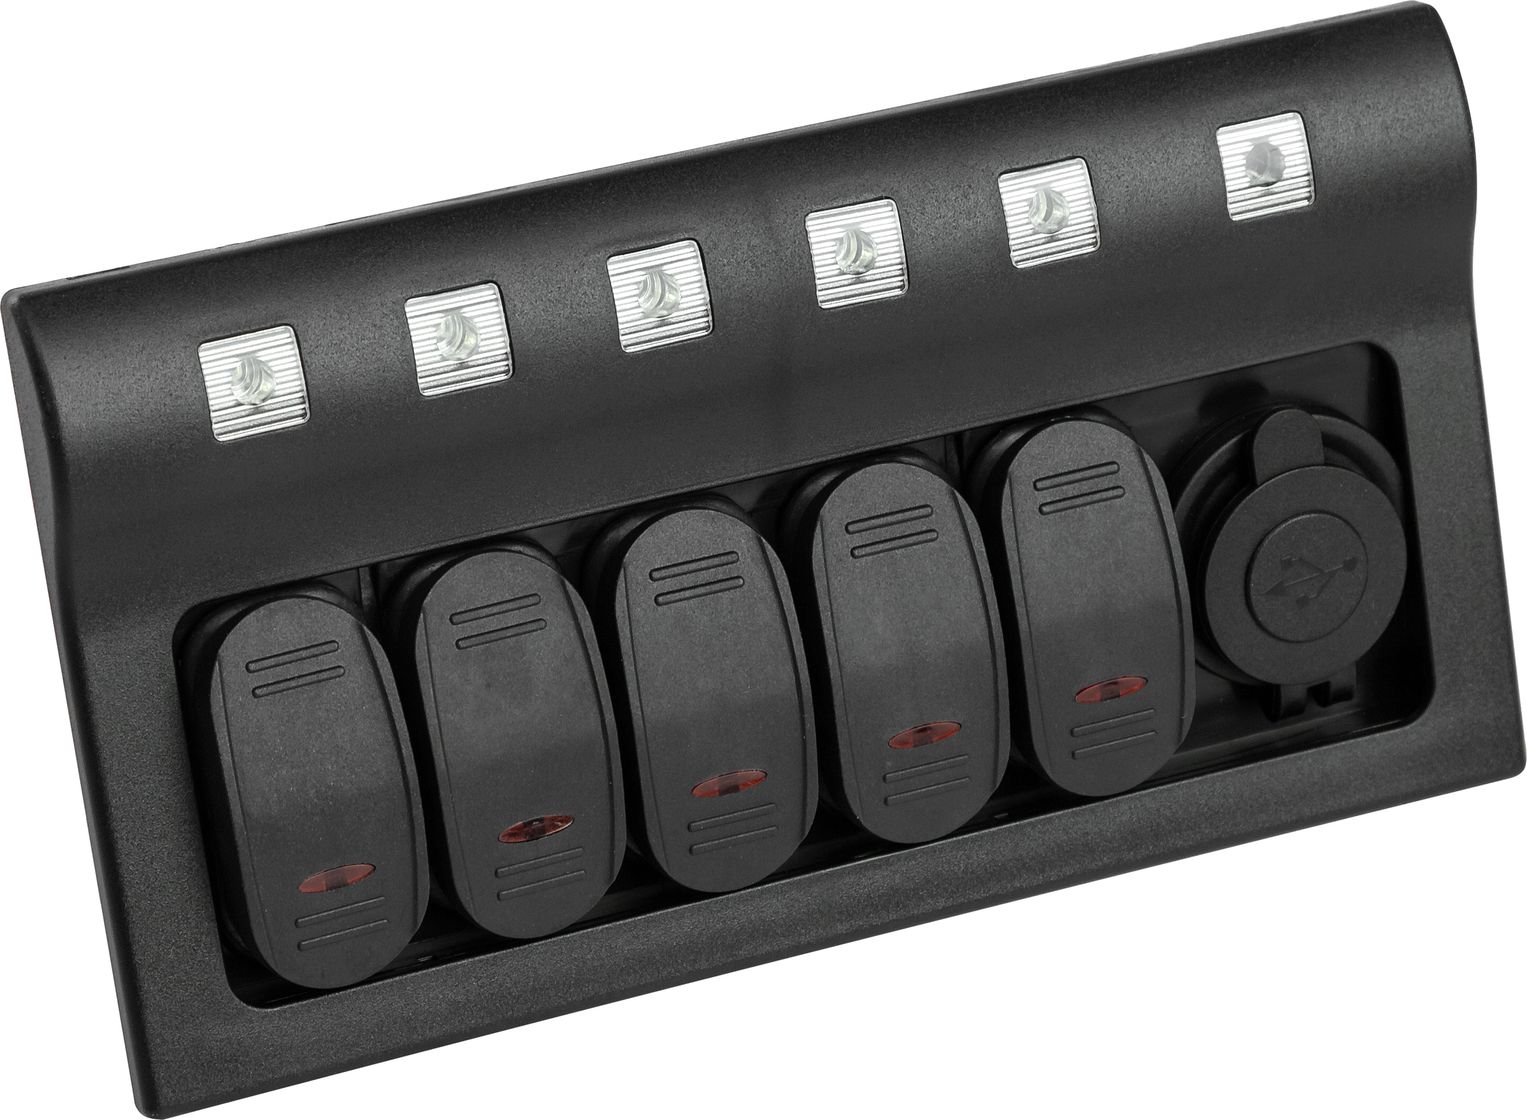 Панель бортового питания 5 переключателей, USB зарядка, индикация, автоматы 10325 панель бортового питания 5 переключателей a 5sw